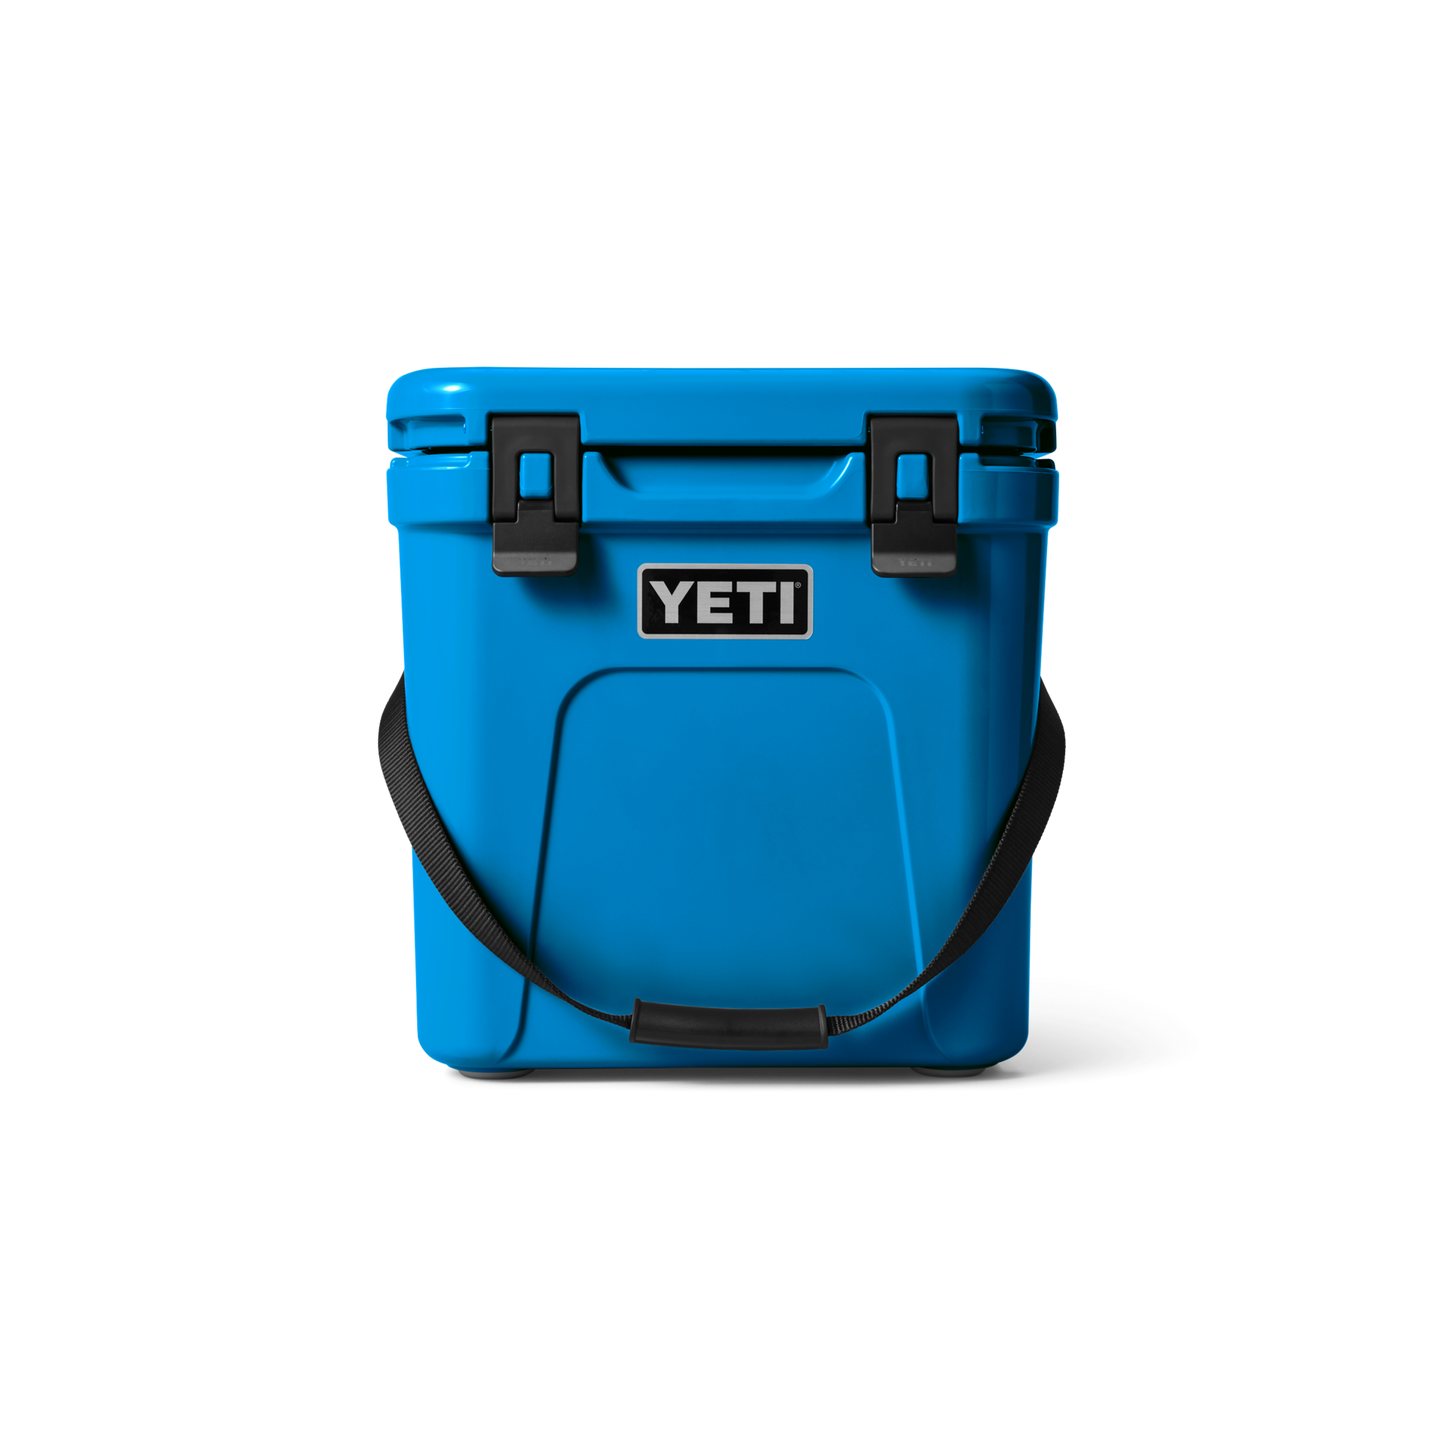 YETI Roadie 24 Hard Cooler [Oversized Item; Extra Shipping Charge*]